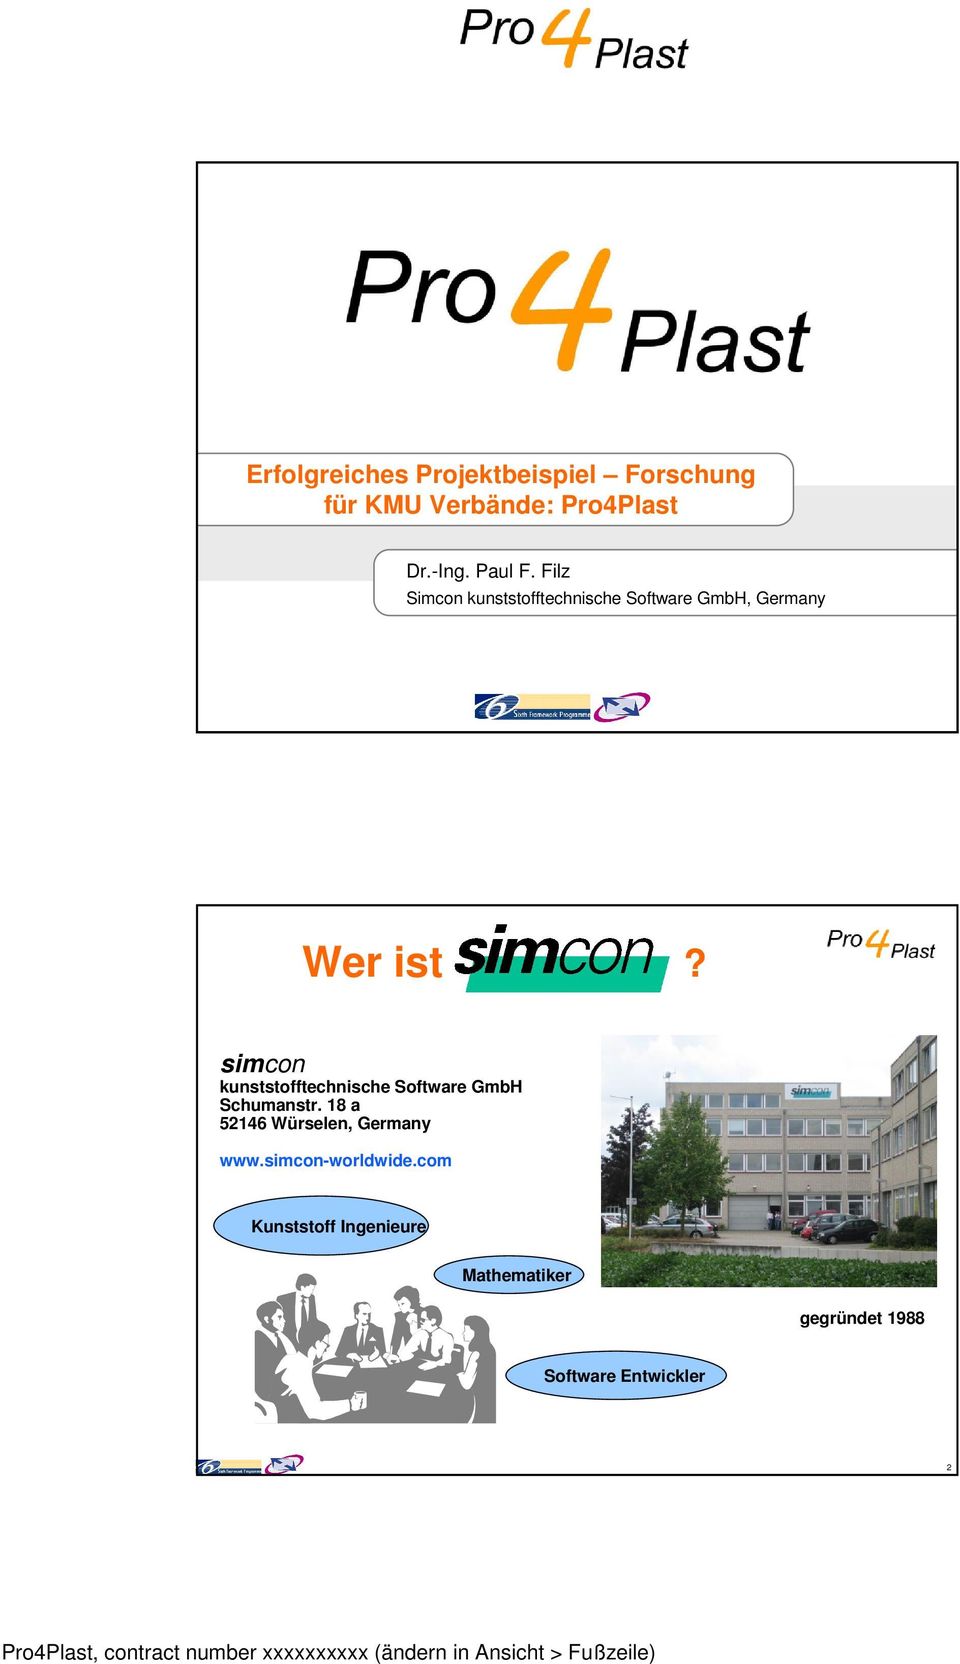 simcon kunststofftechnische Software GmbH Schumanstr.